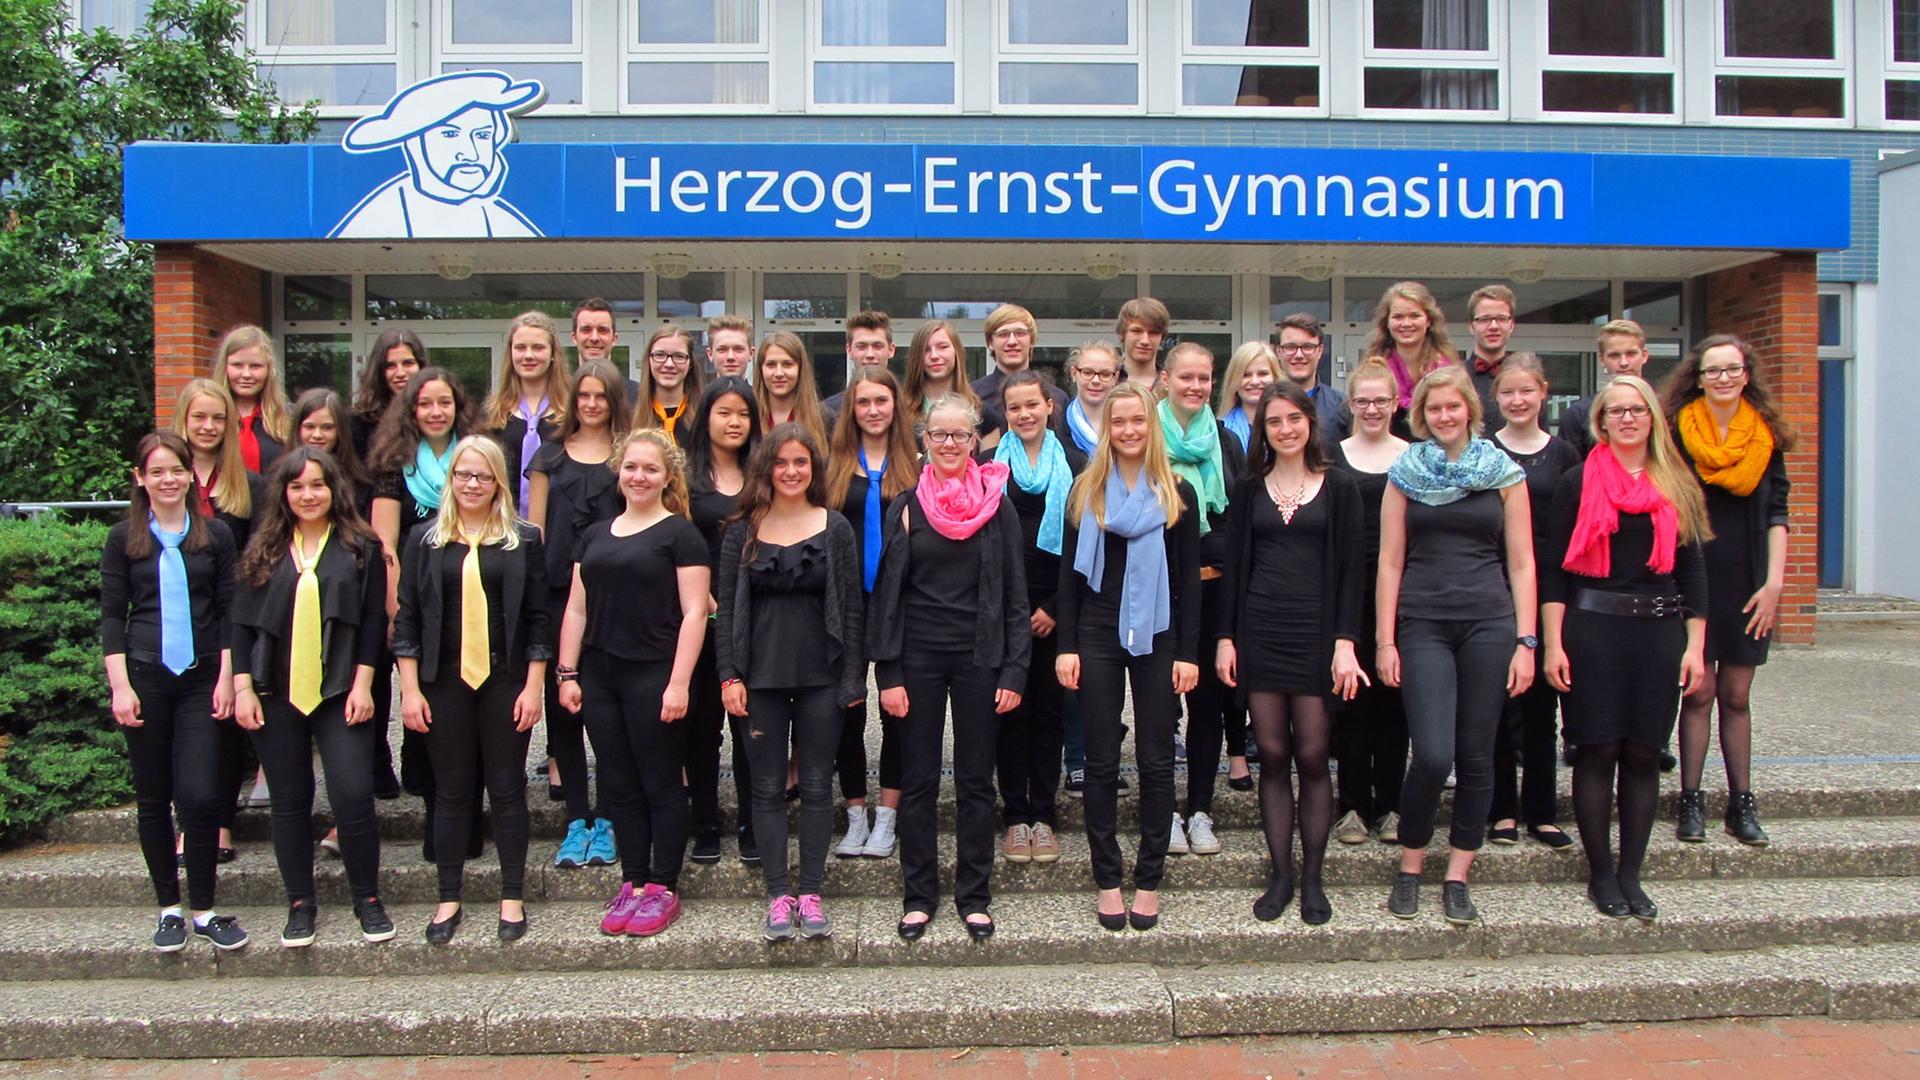 Der Chor des Herzog-Ernst-Gymnasiums Uelzen.